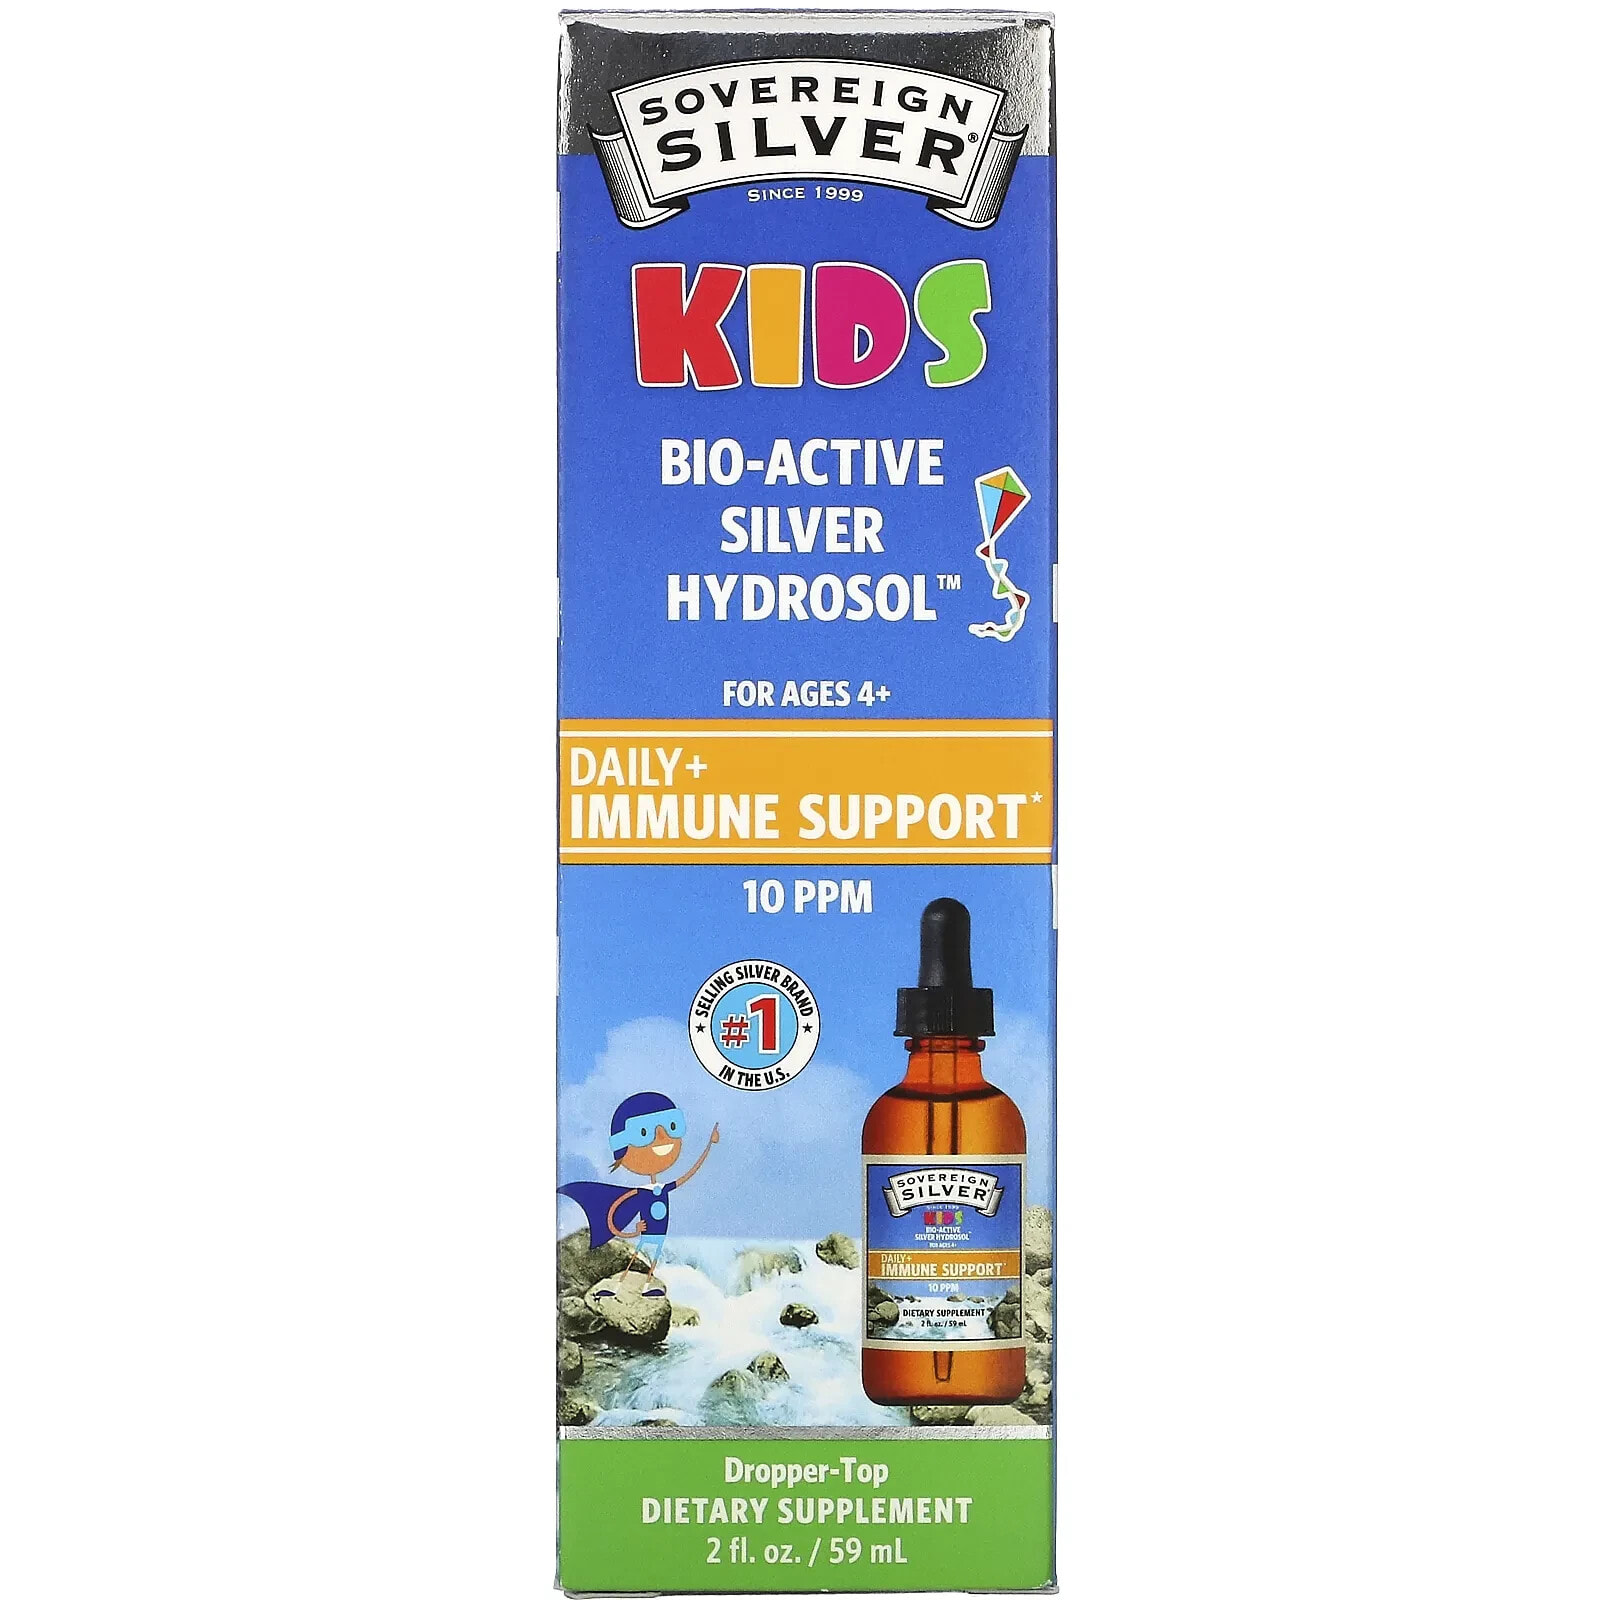 Sovereign Silver, Биоактивный гидрозоль серебра для детей, ежедневный спрей для иммунной поддержки, для детей от 4 лет, 10 част. / Млн, 59 мл (2 жидк. Унции)